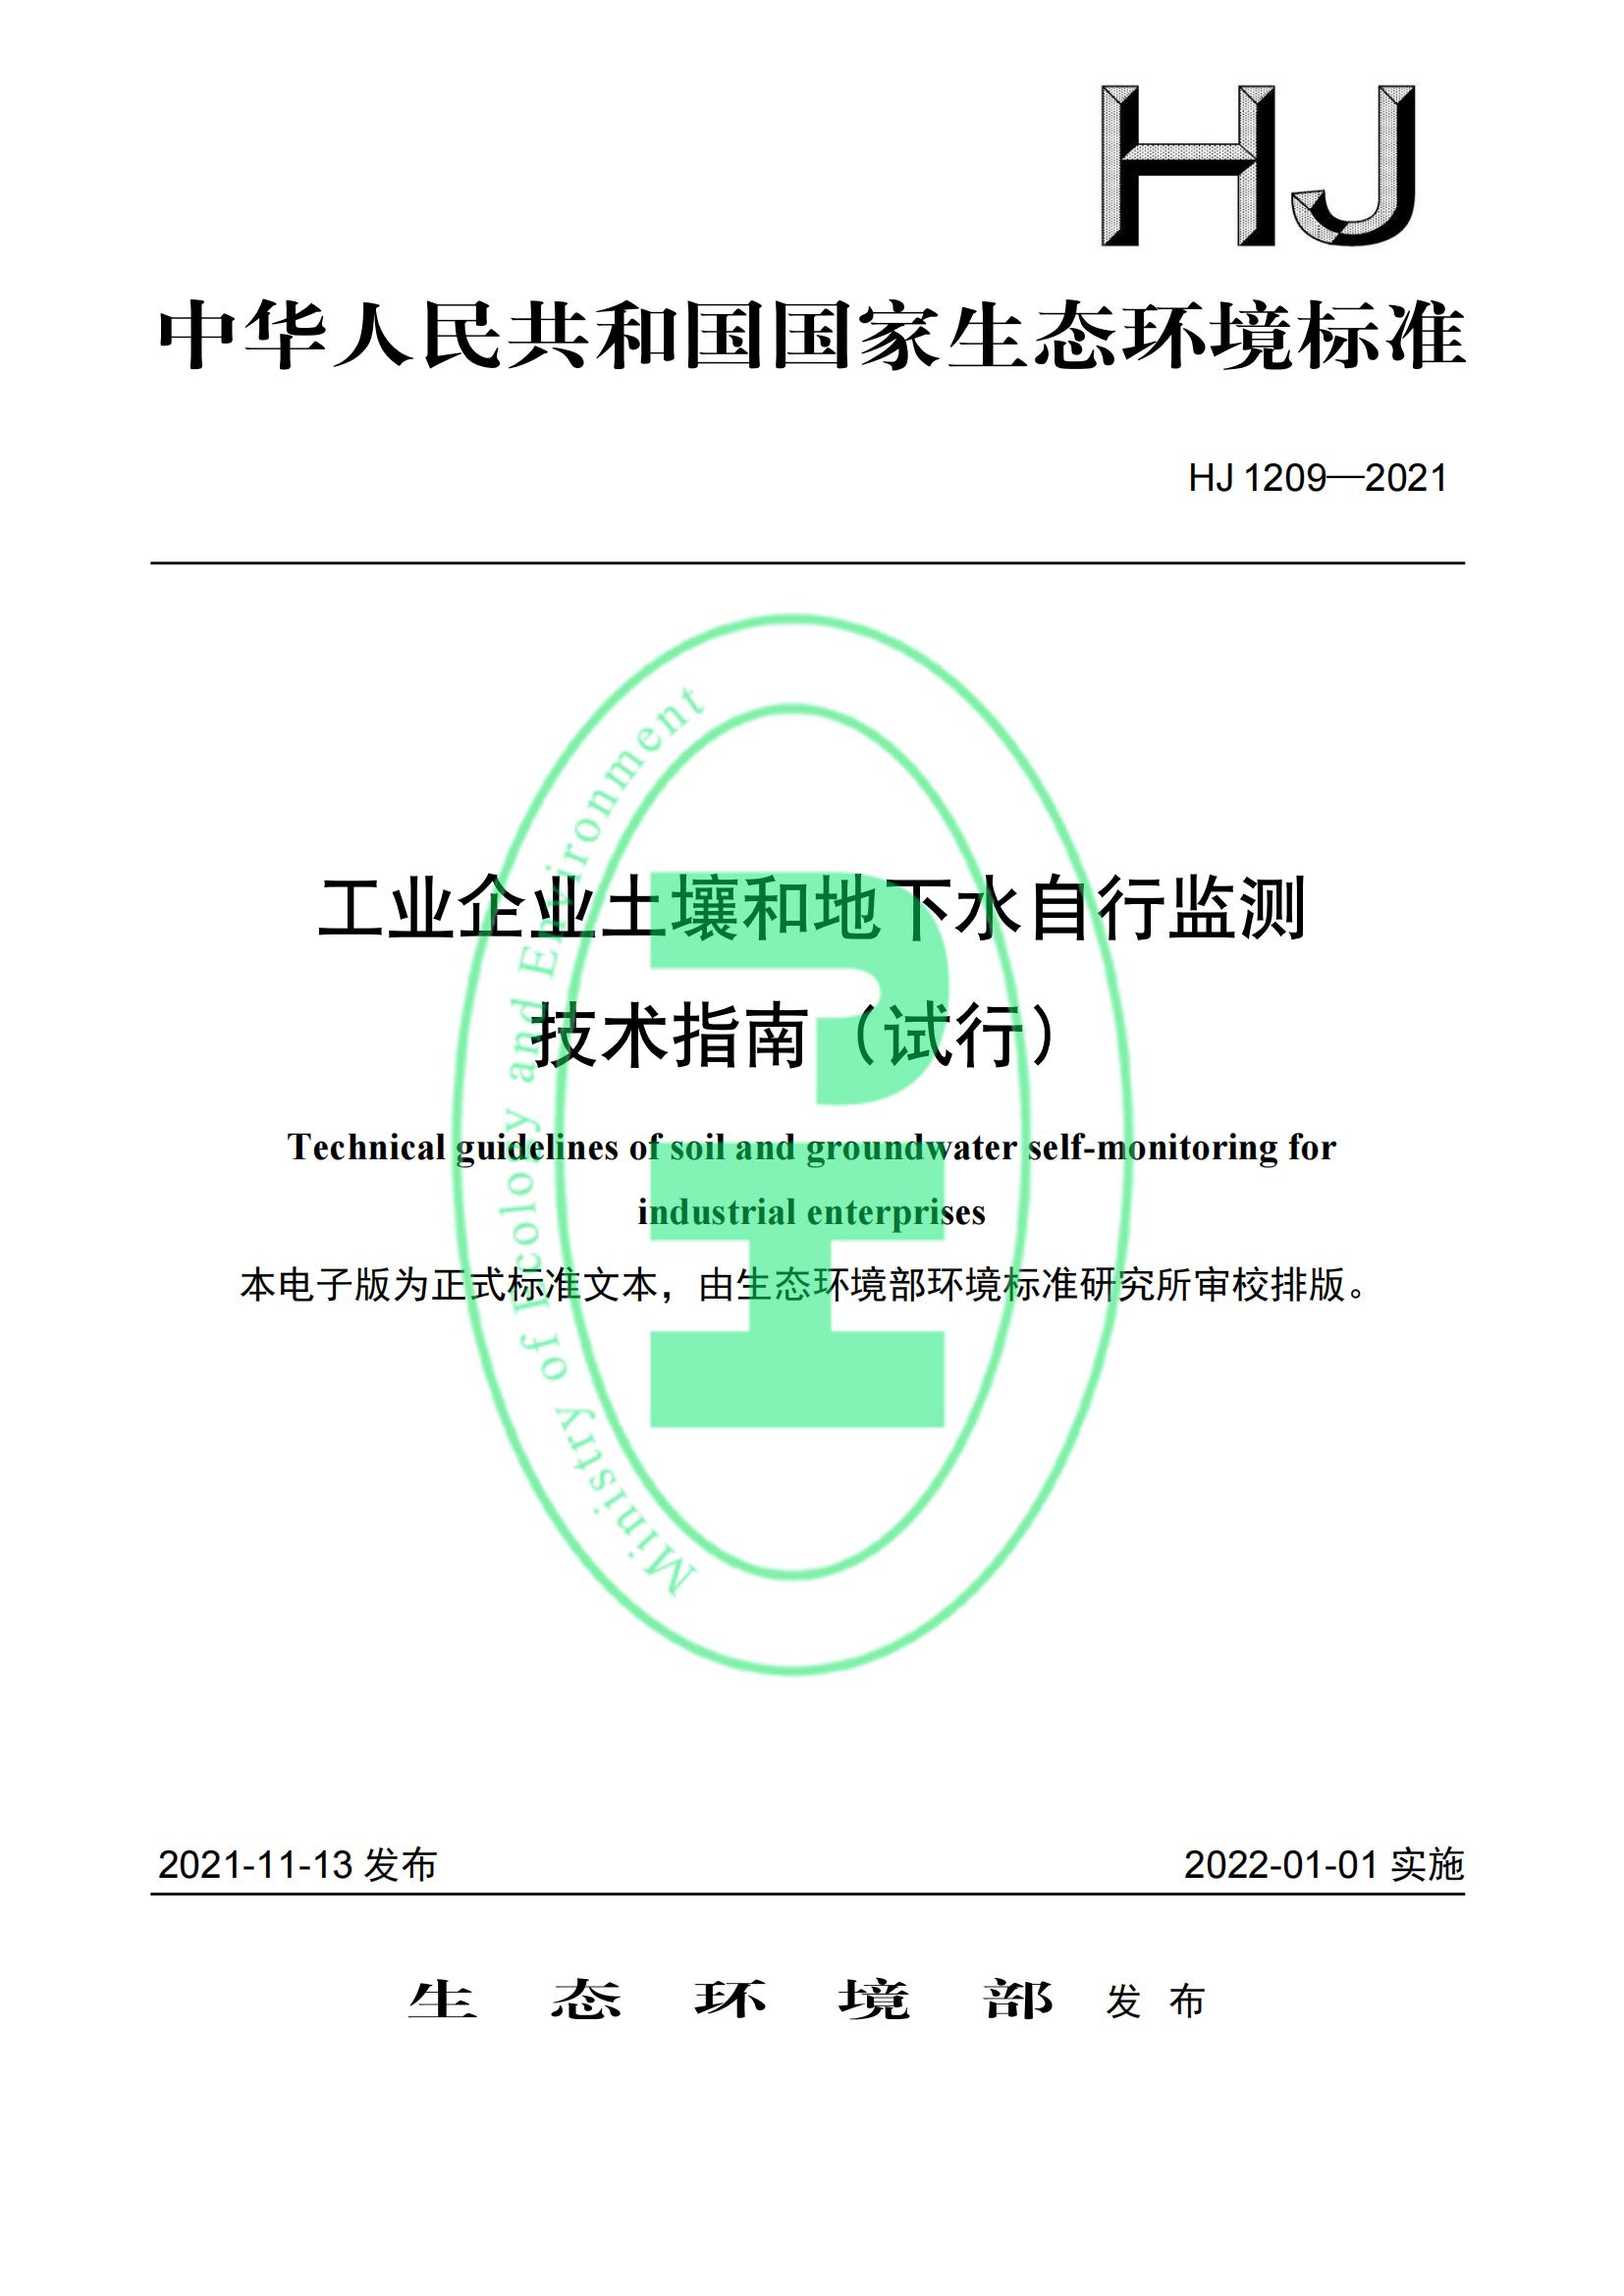 工业企业土壤和地下水自行监测 技术指南（试行）（HJ 1209—2021）